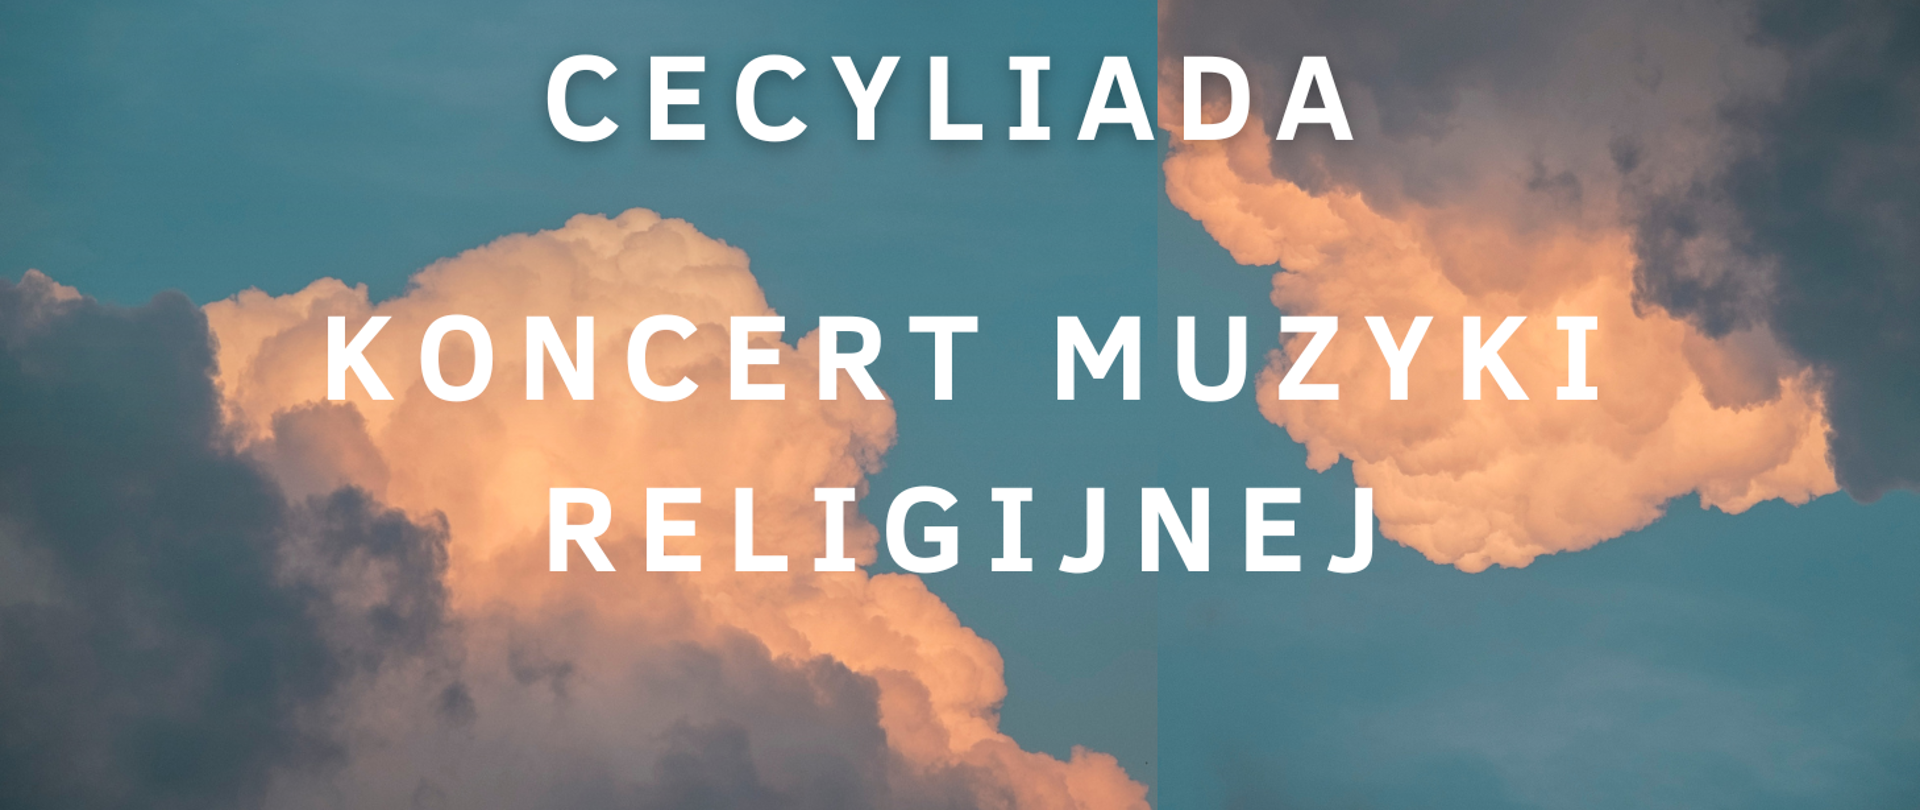 Niebieskie tło, w lewym dolnym i prawym górnym rogu chmury. Napis Cecyliada koncert muzyki religijnej. 